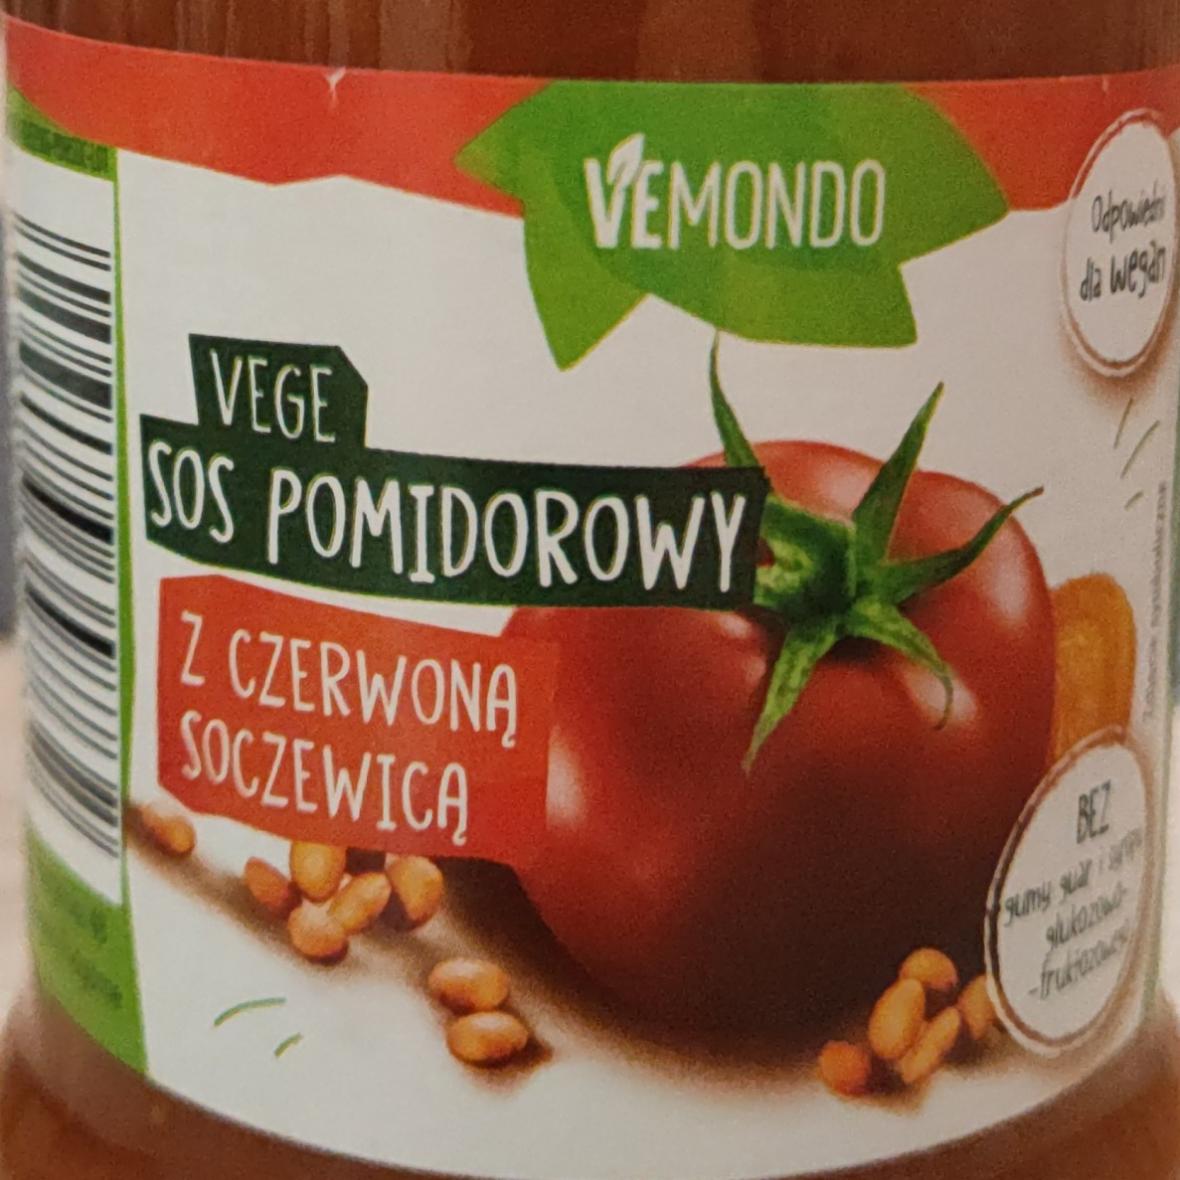 Zdjęcia - Vege sos pomidorowy z czerwoną soczewicą vemondo